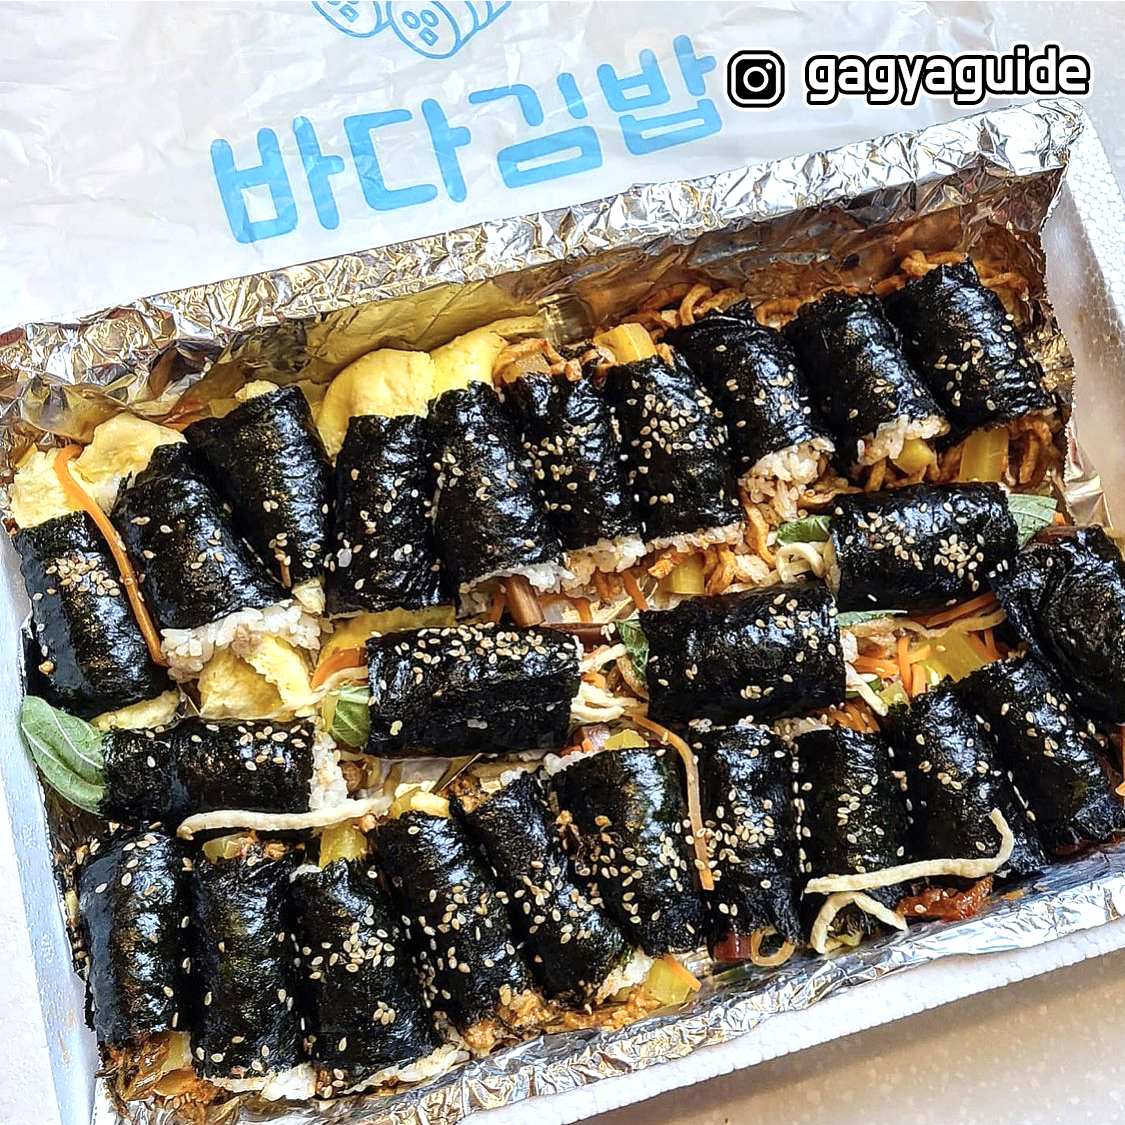 케이스에 가지런히 놓여 있는 꼬마 김밥